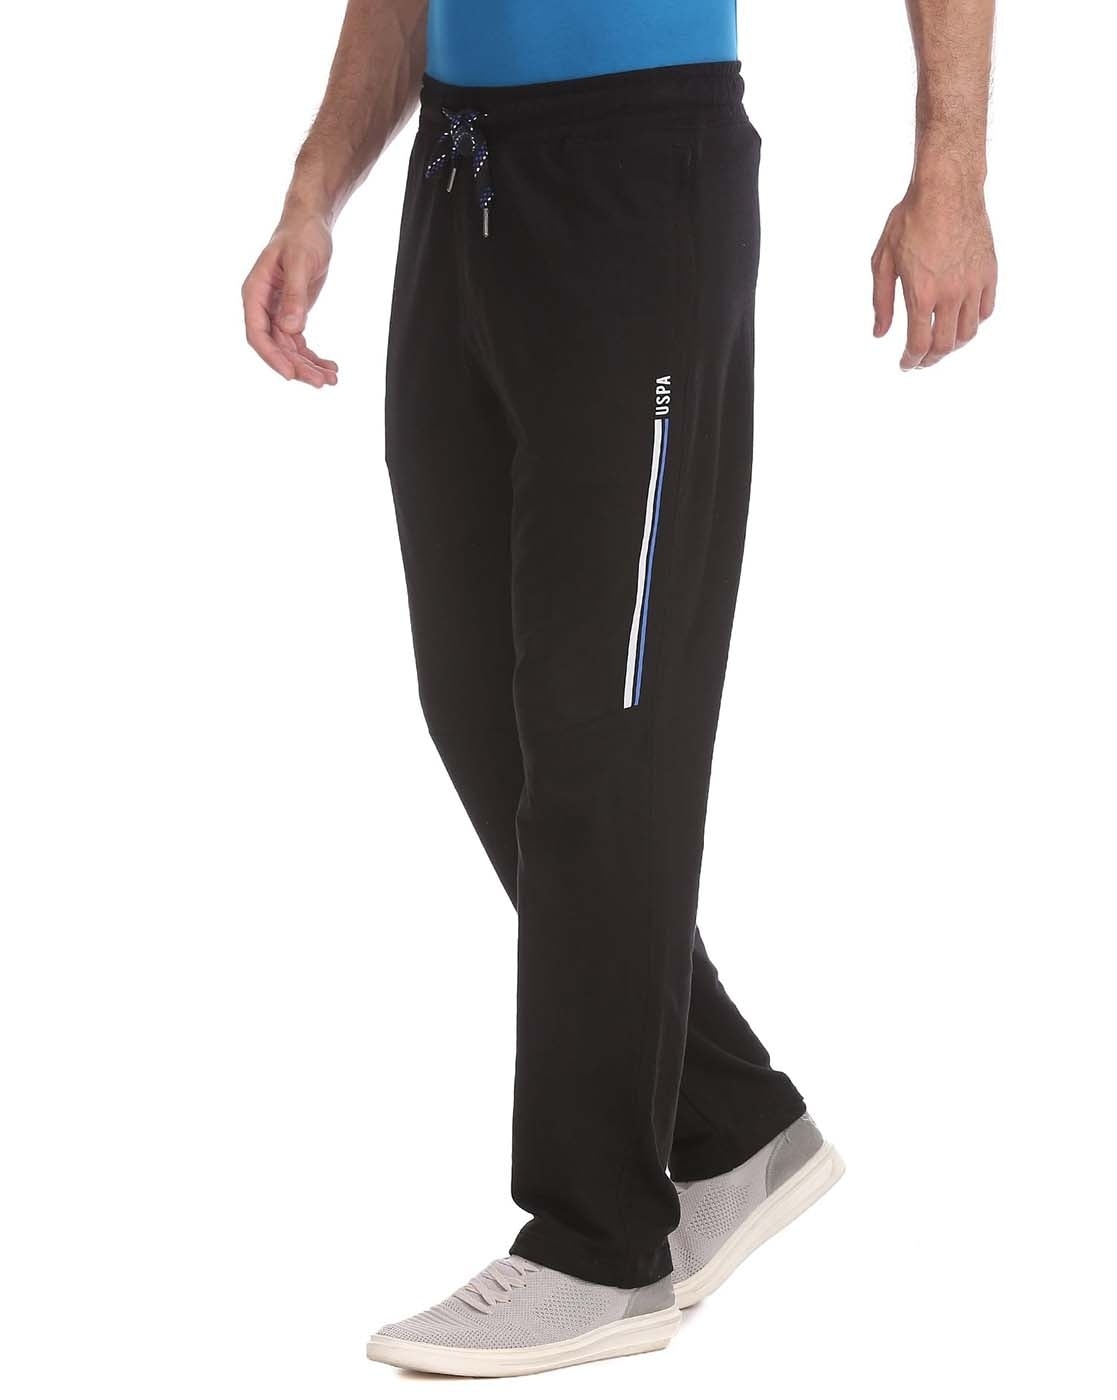 Jockey Men's Cotton Track Pants Loungewear, Leisurewear Sportswear